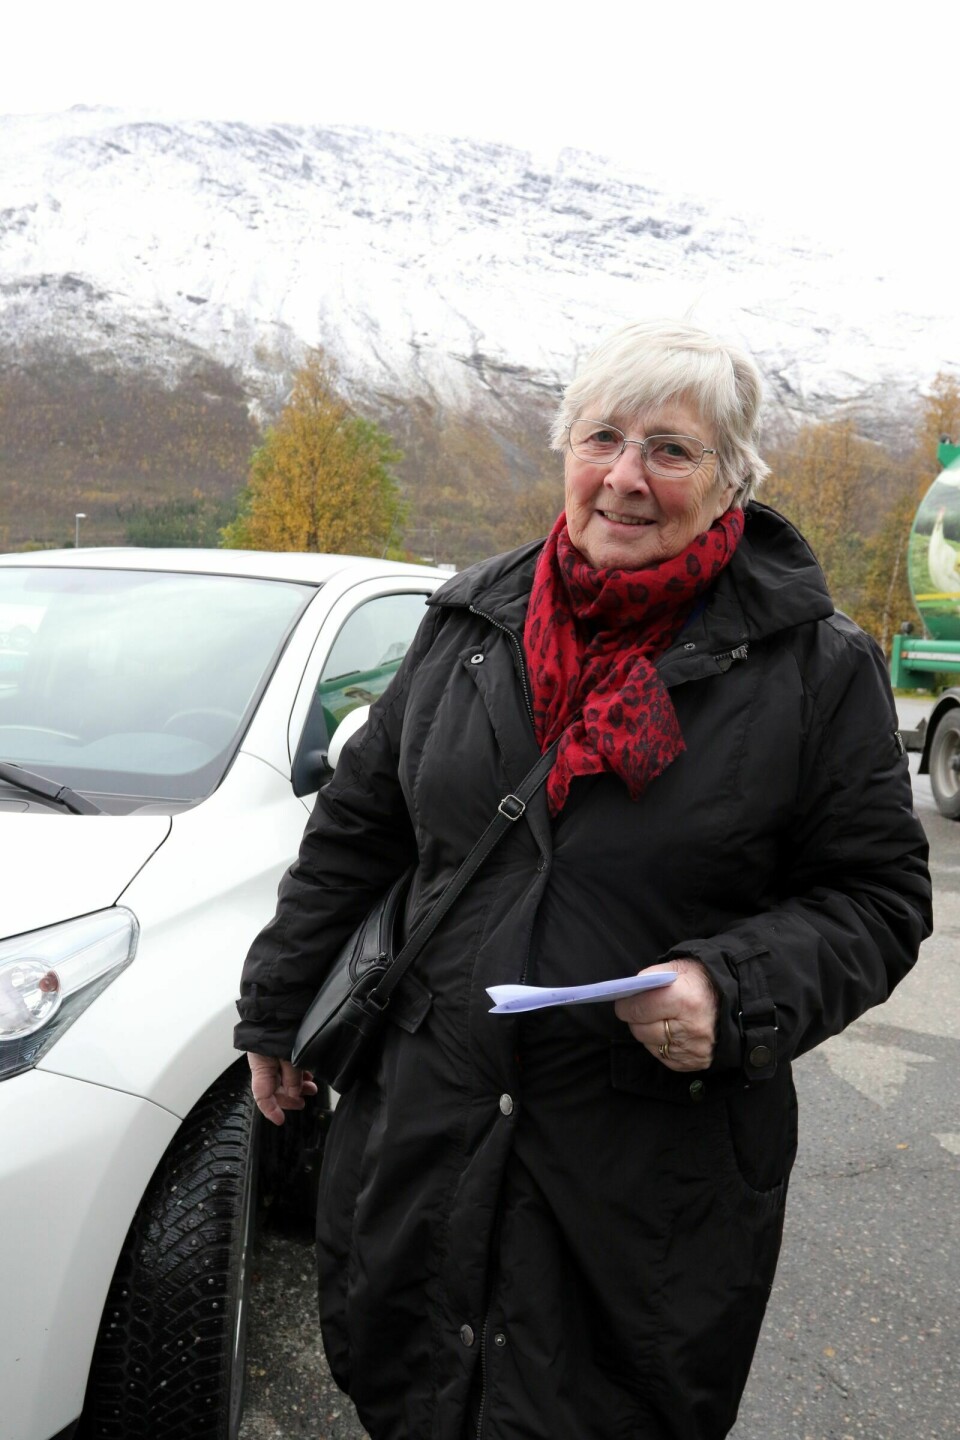 REGNING: Ragnhild Furustøl Jenssen (79) fikk ikke en vanlig regning i posten, før inkassovarselet for legetimen plutselig dukket opp. Foto: Ivar Løvland (Arkiv)